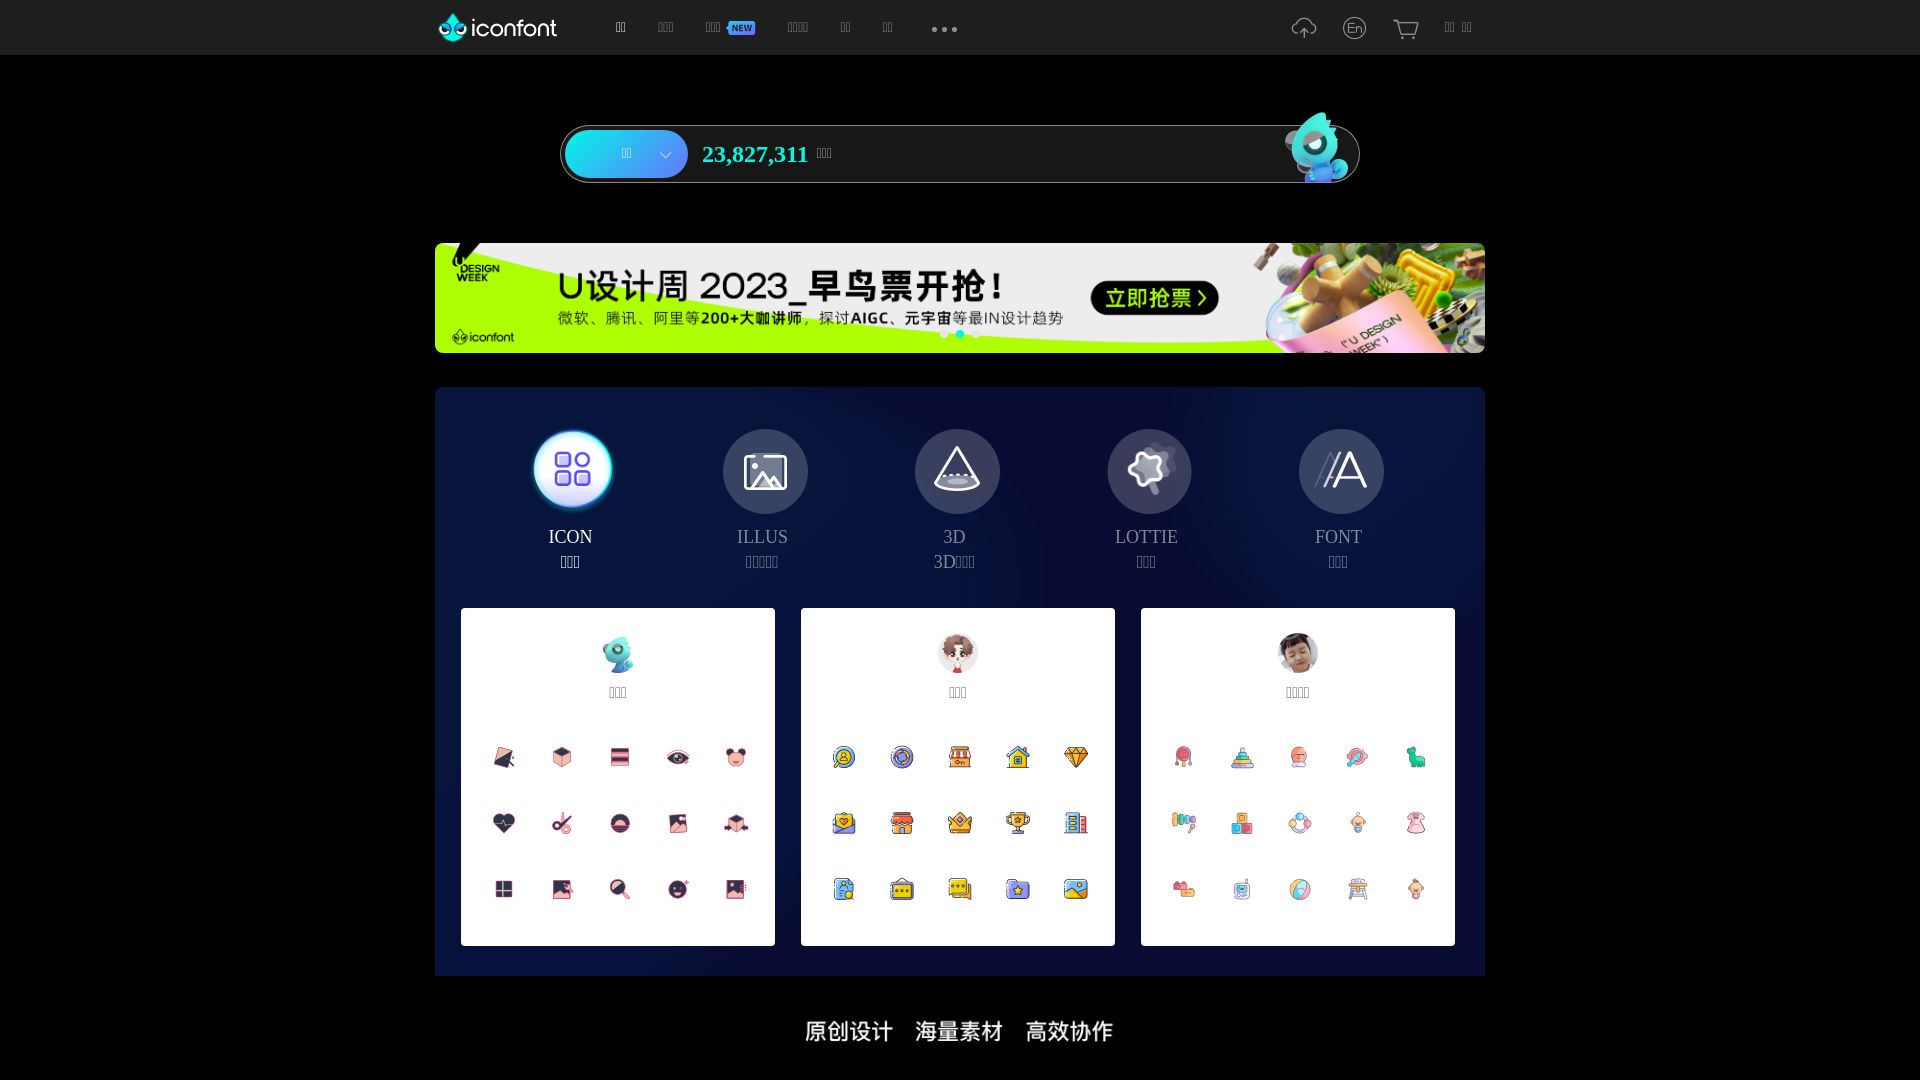 Stato del sito web iconfont.cn è   ONLINE